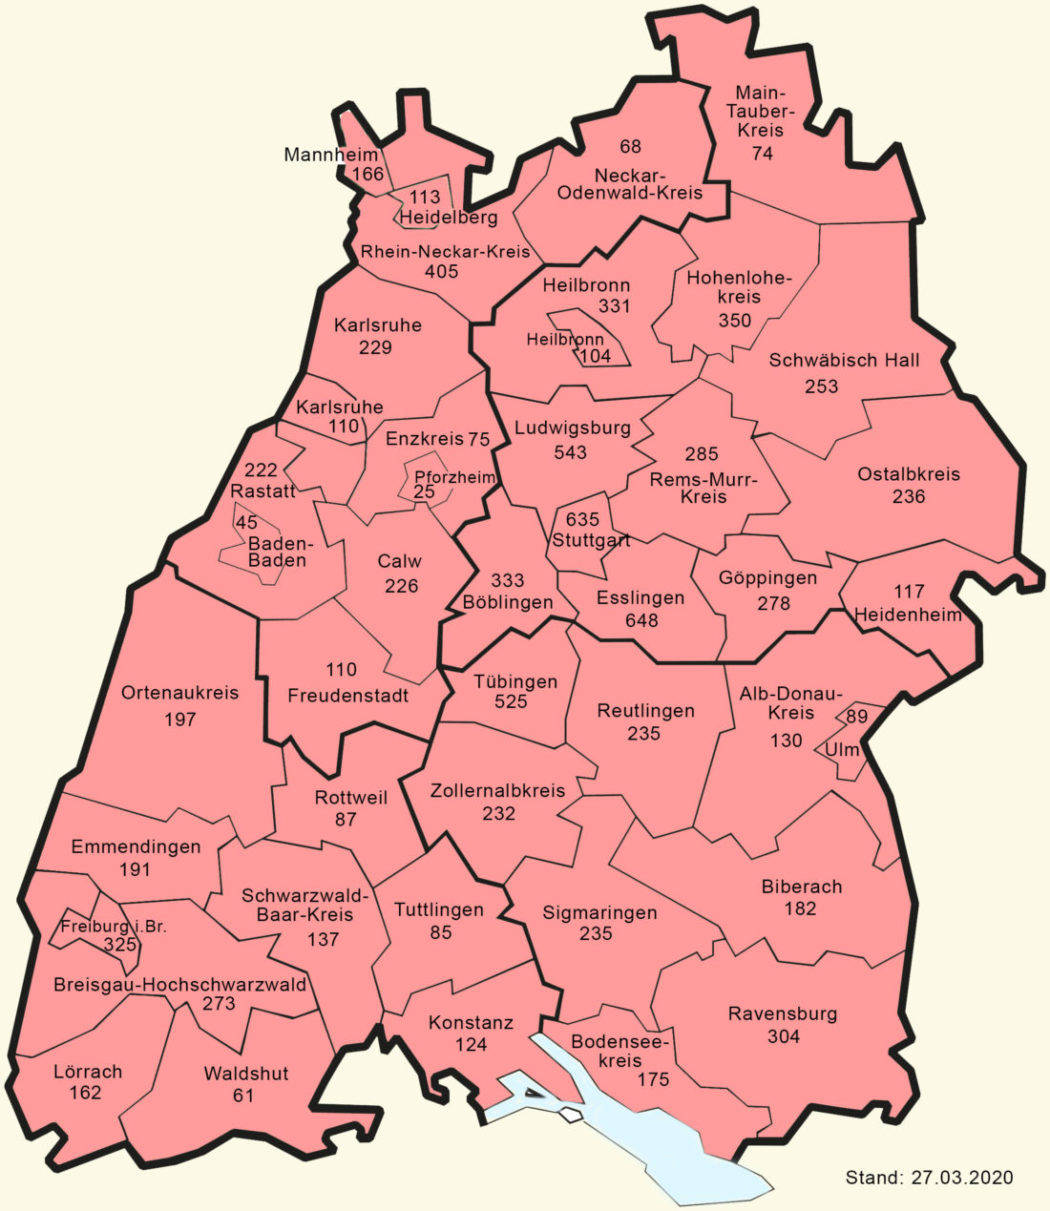 Corona Baden-Württemberg